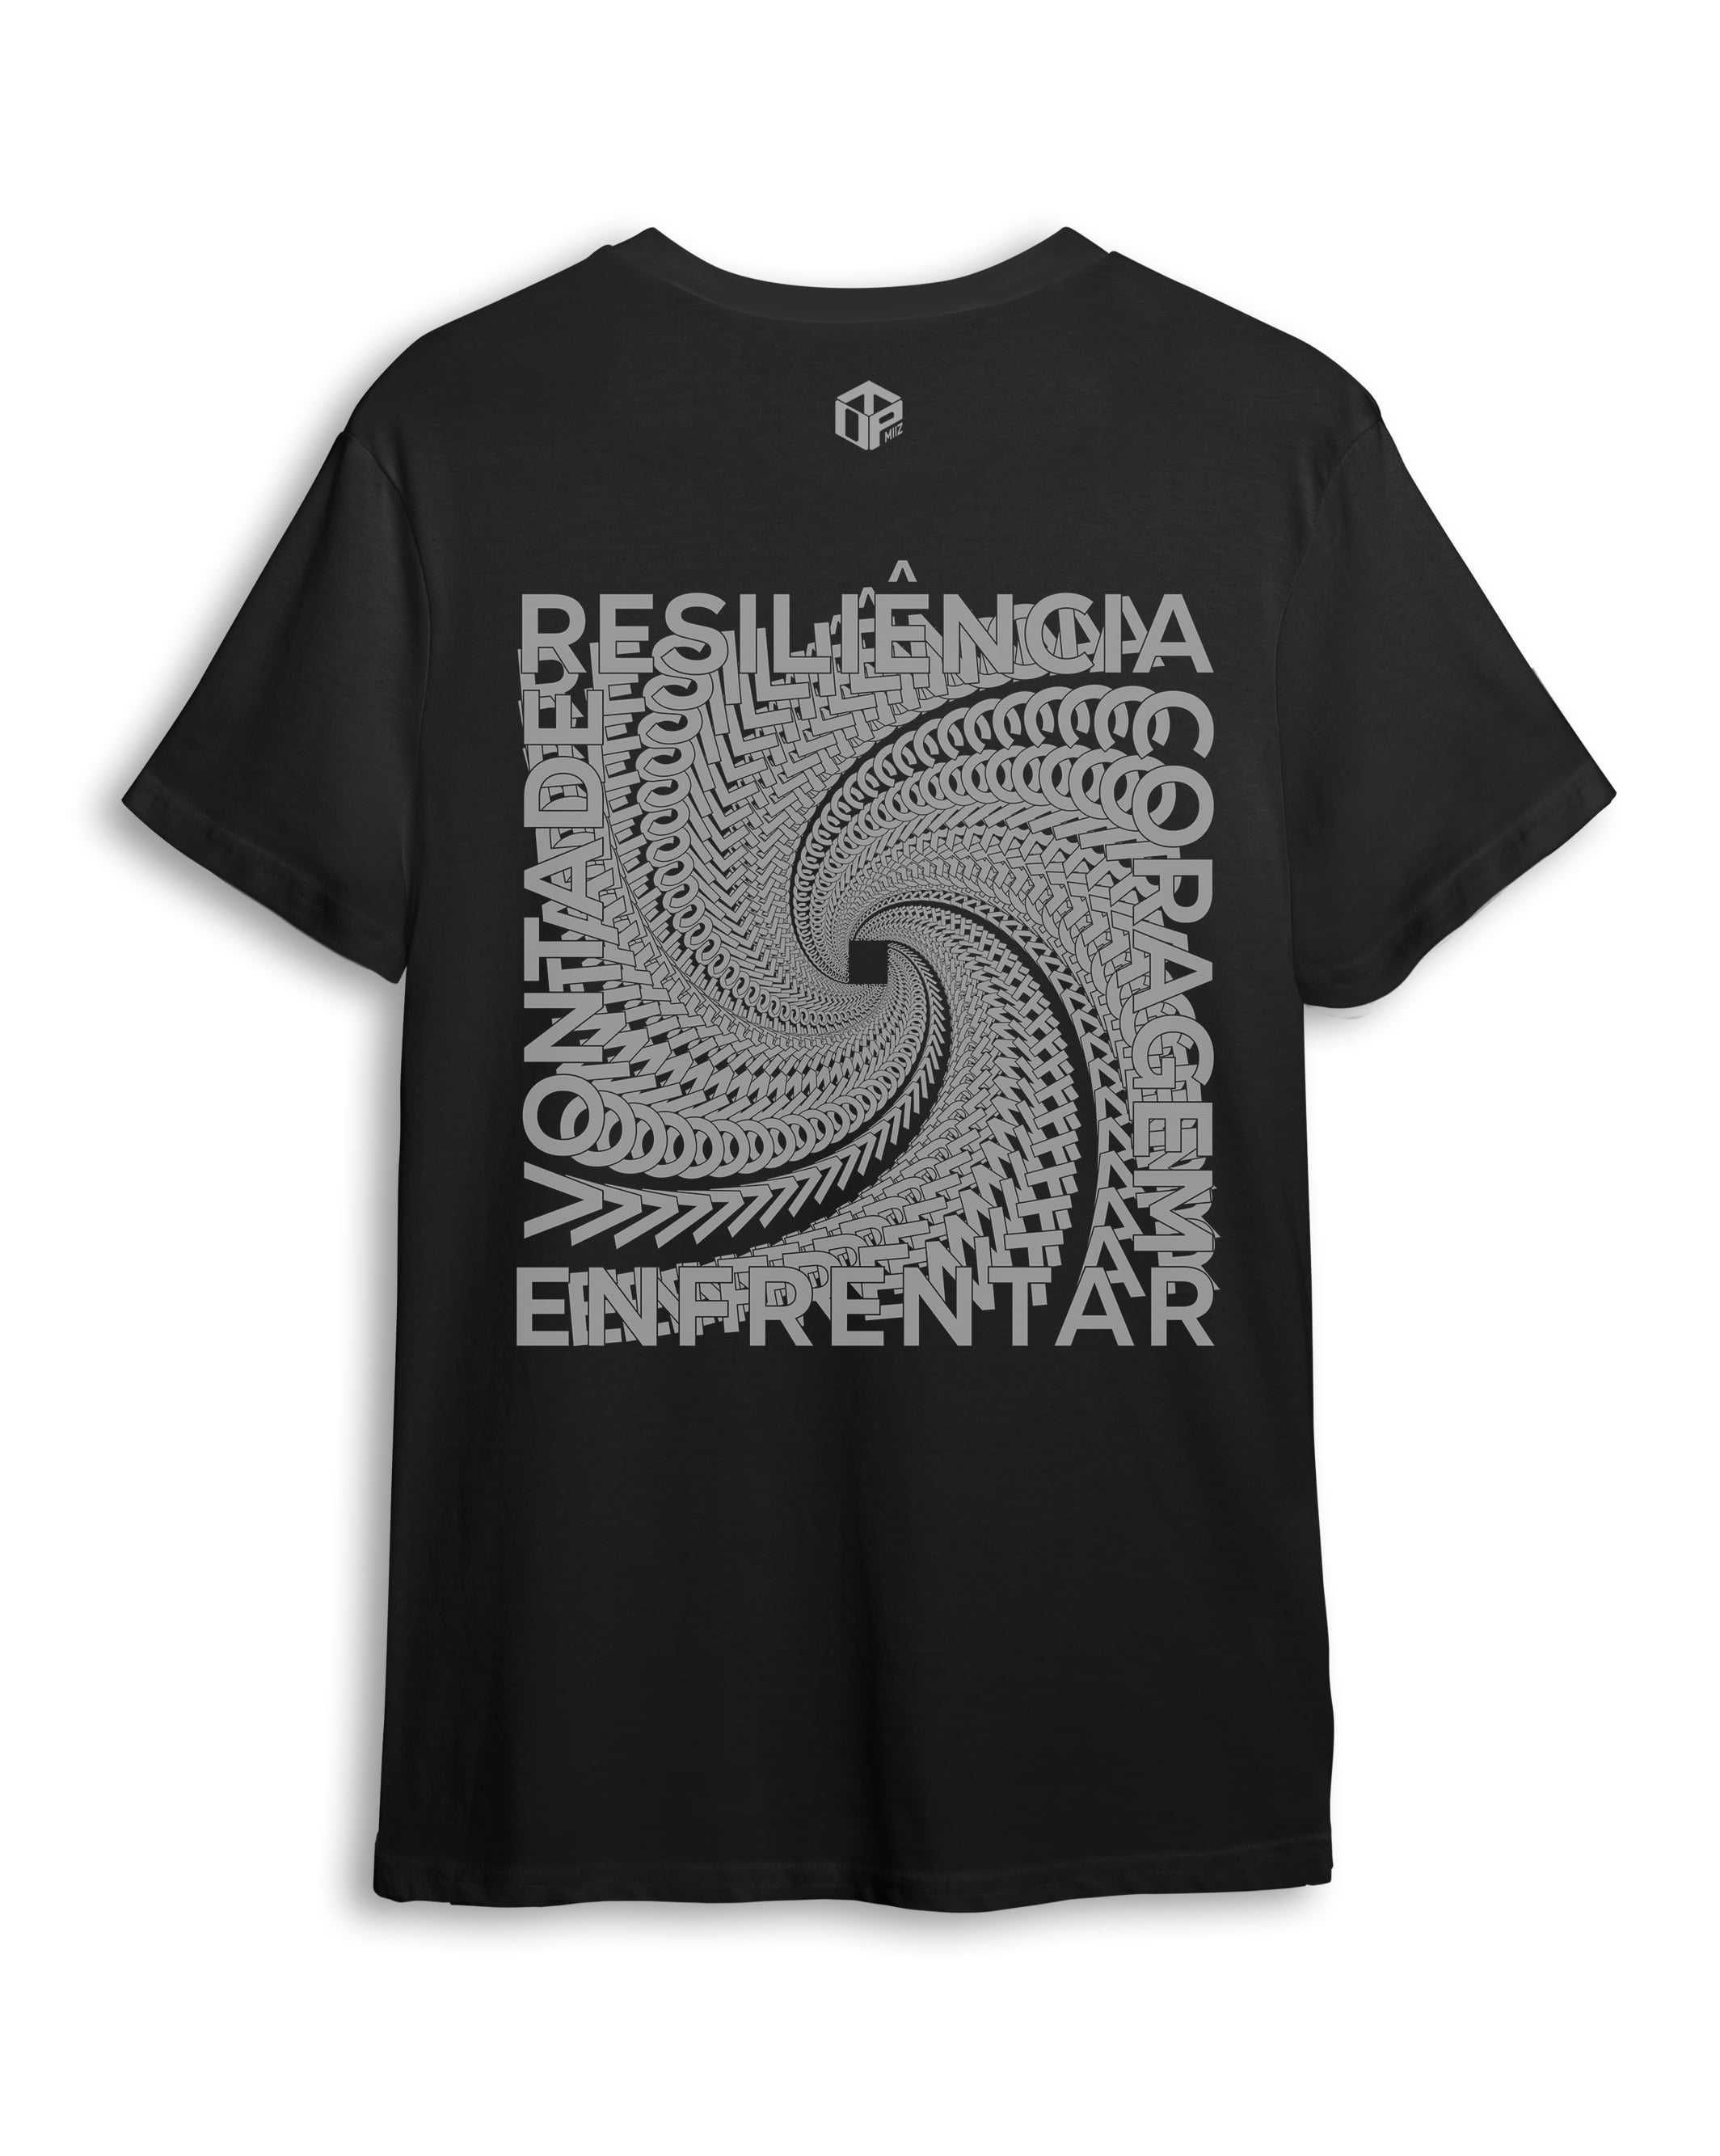 T-Shirt Personalizada (Resiliência) Tubular basica em Algodão orgânico